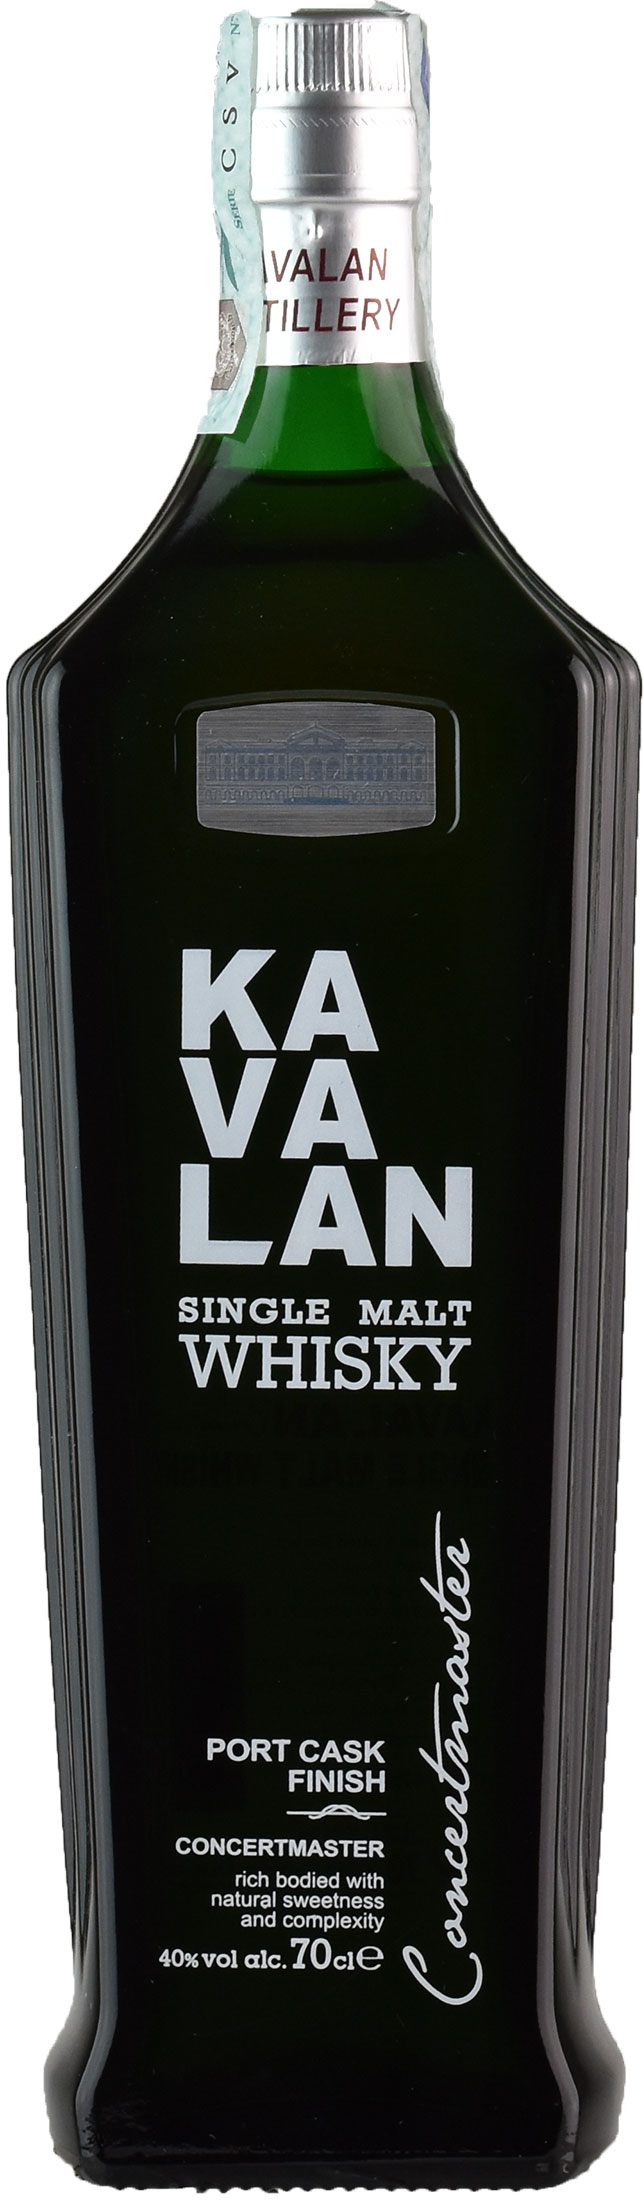 Kavalan Whisky Concertmaster Port Cask Finish